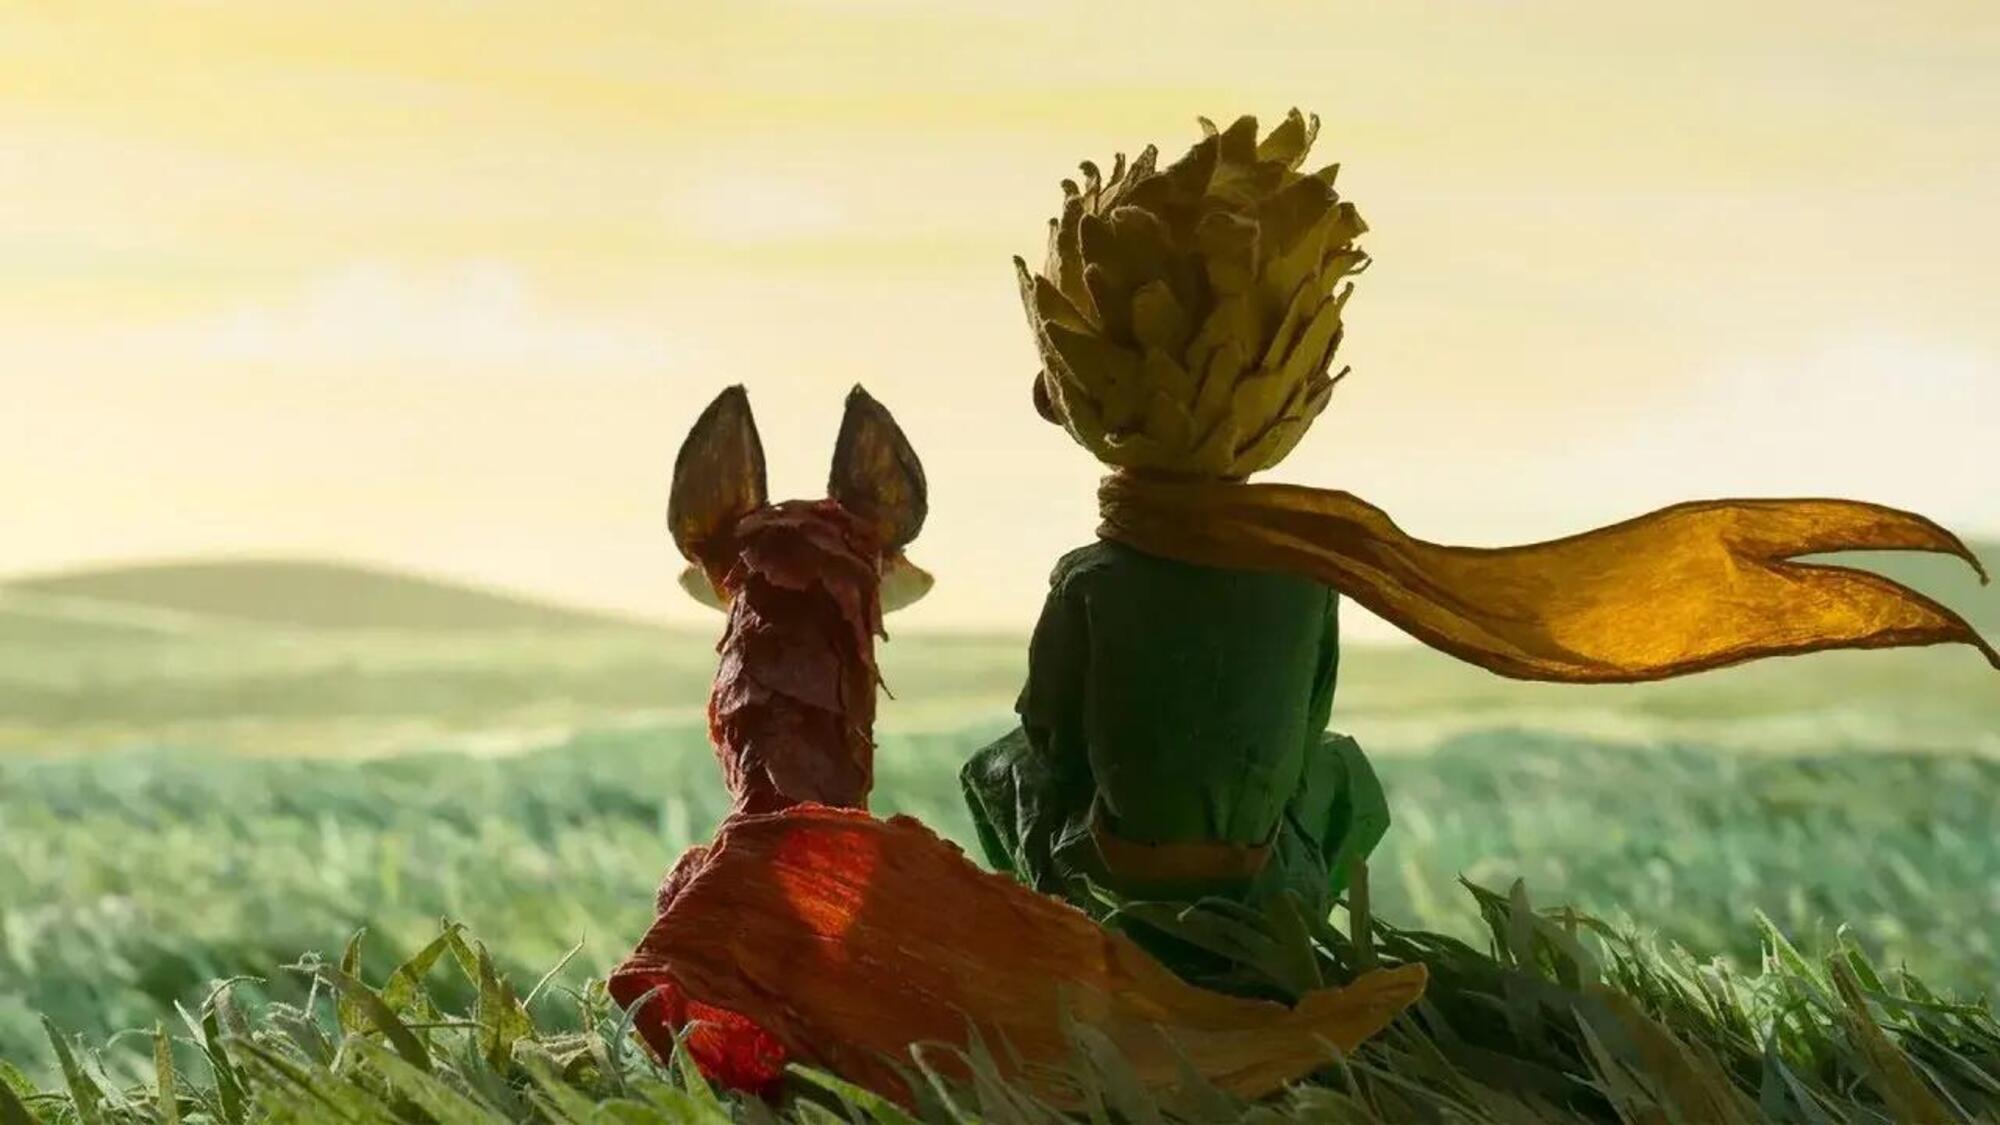 Una scena dal film di animazione del 2015, Il piccolo principe